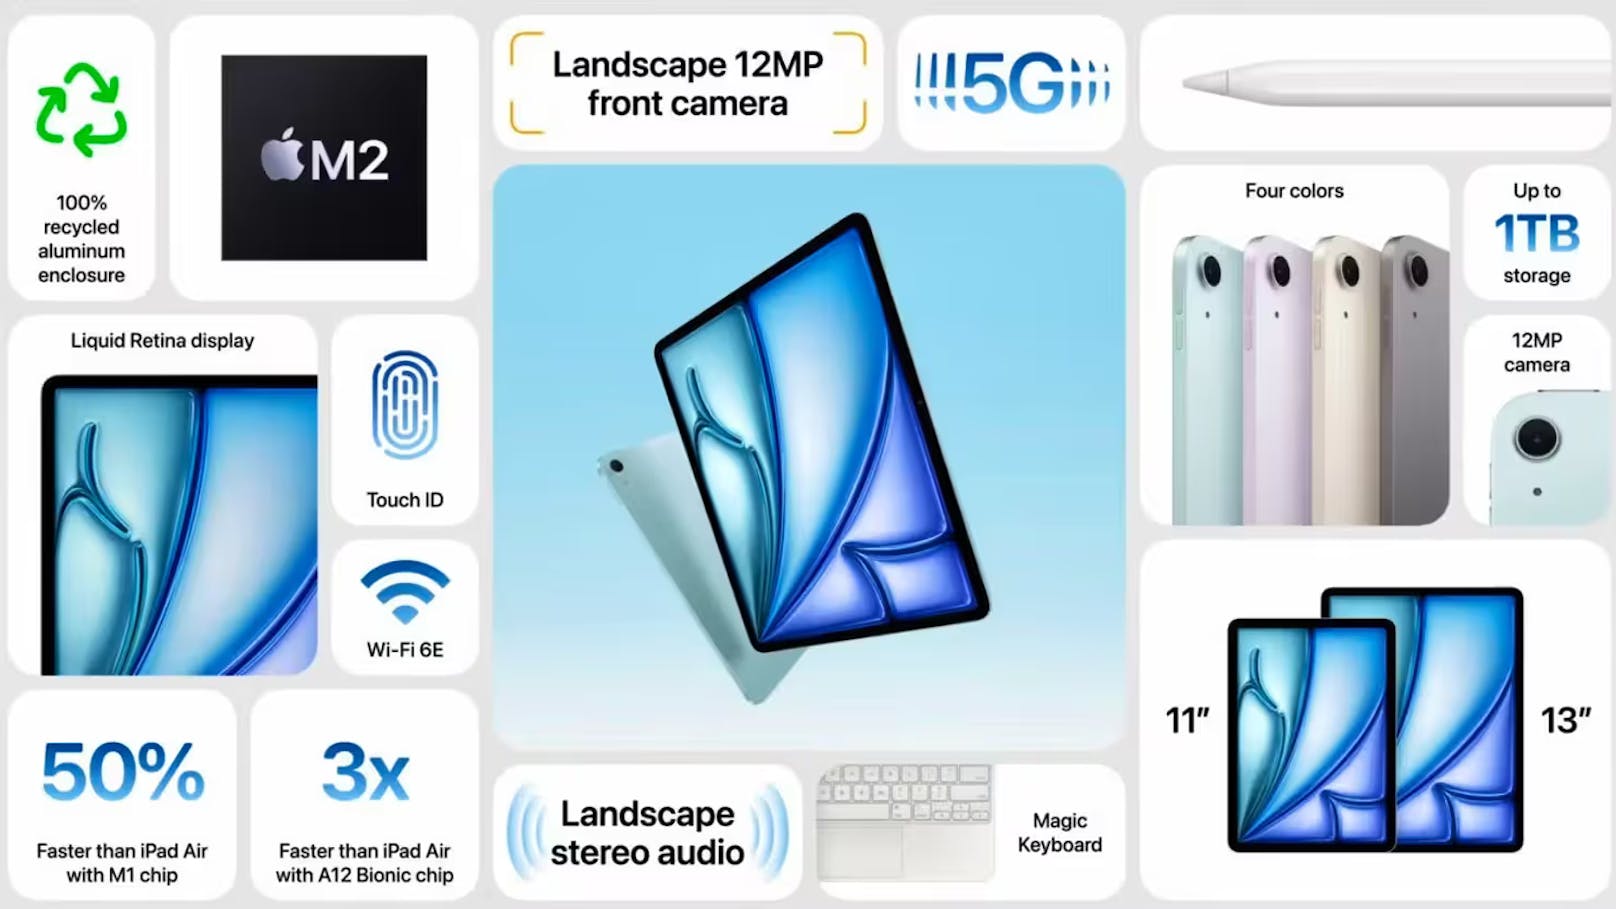 Das sind die Features des neuen iPad Air.